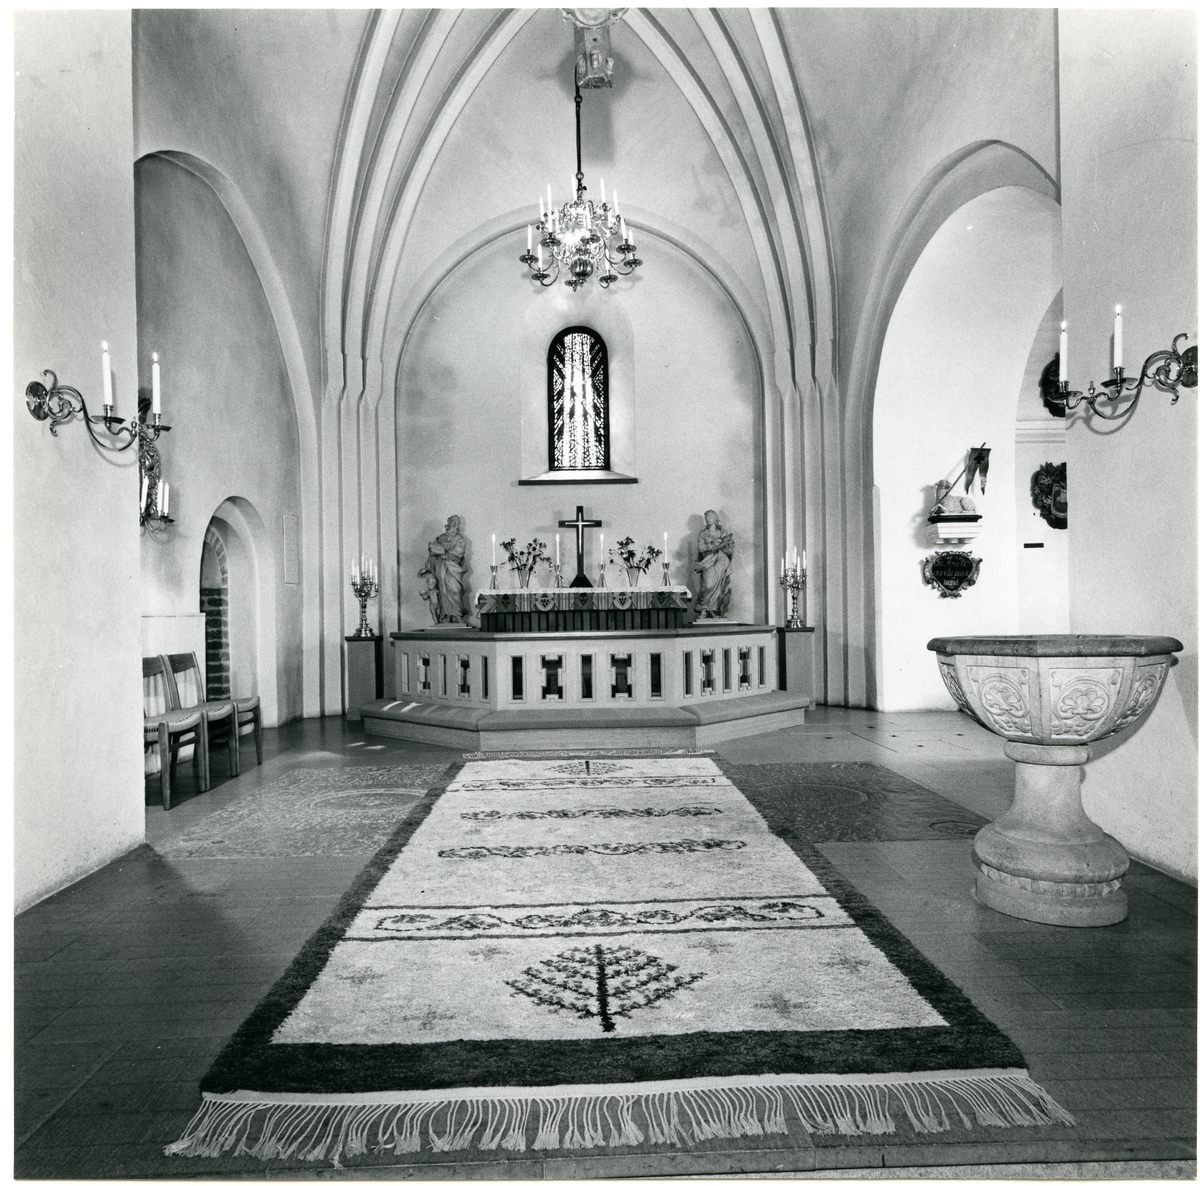 Badelunda sn, kyrkan.
Interiör med altaret, dopfunt, matta m.m., 1983.